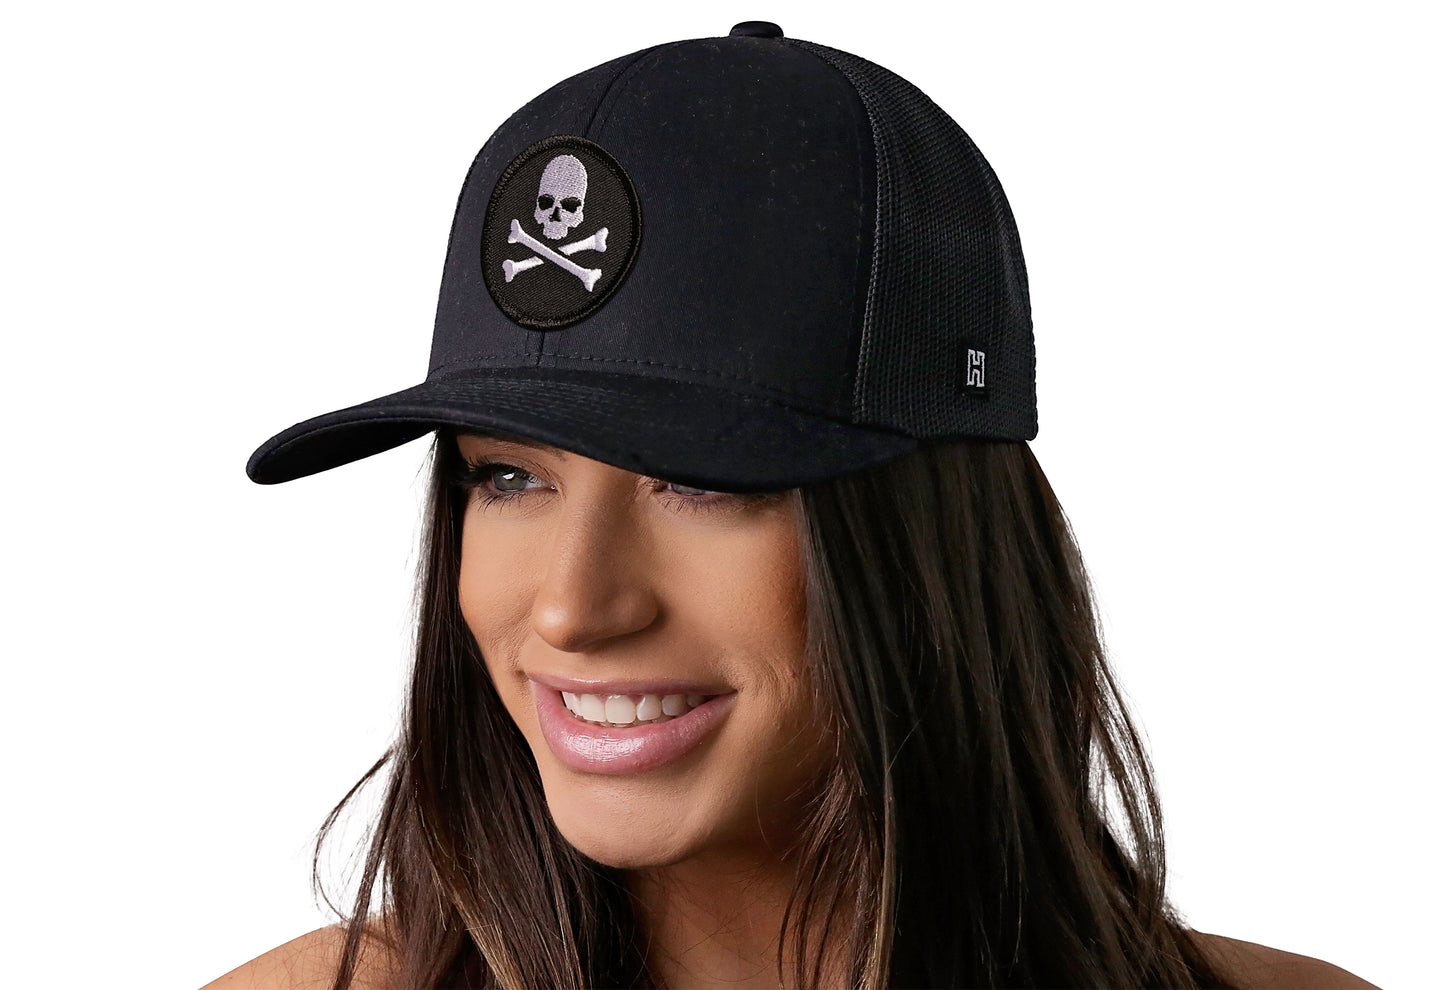 Skull and Crossbones Trucker Hat  |  Black Jolly Roger Snapback